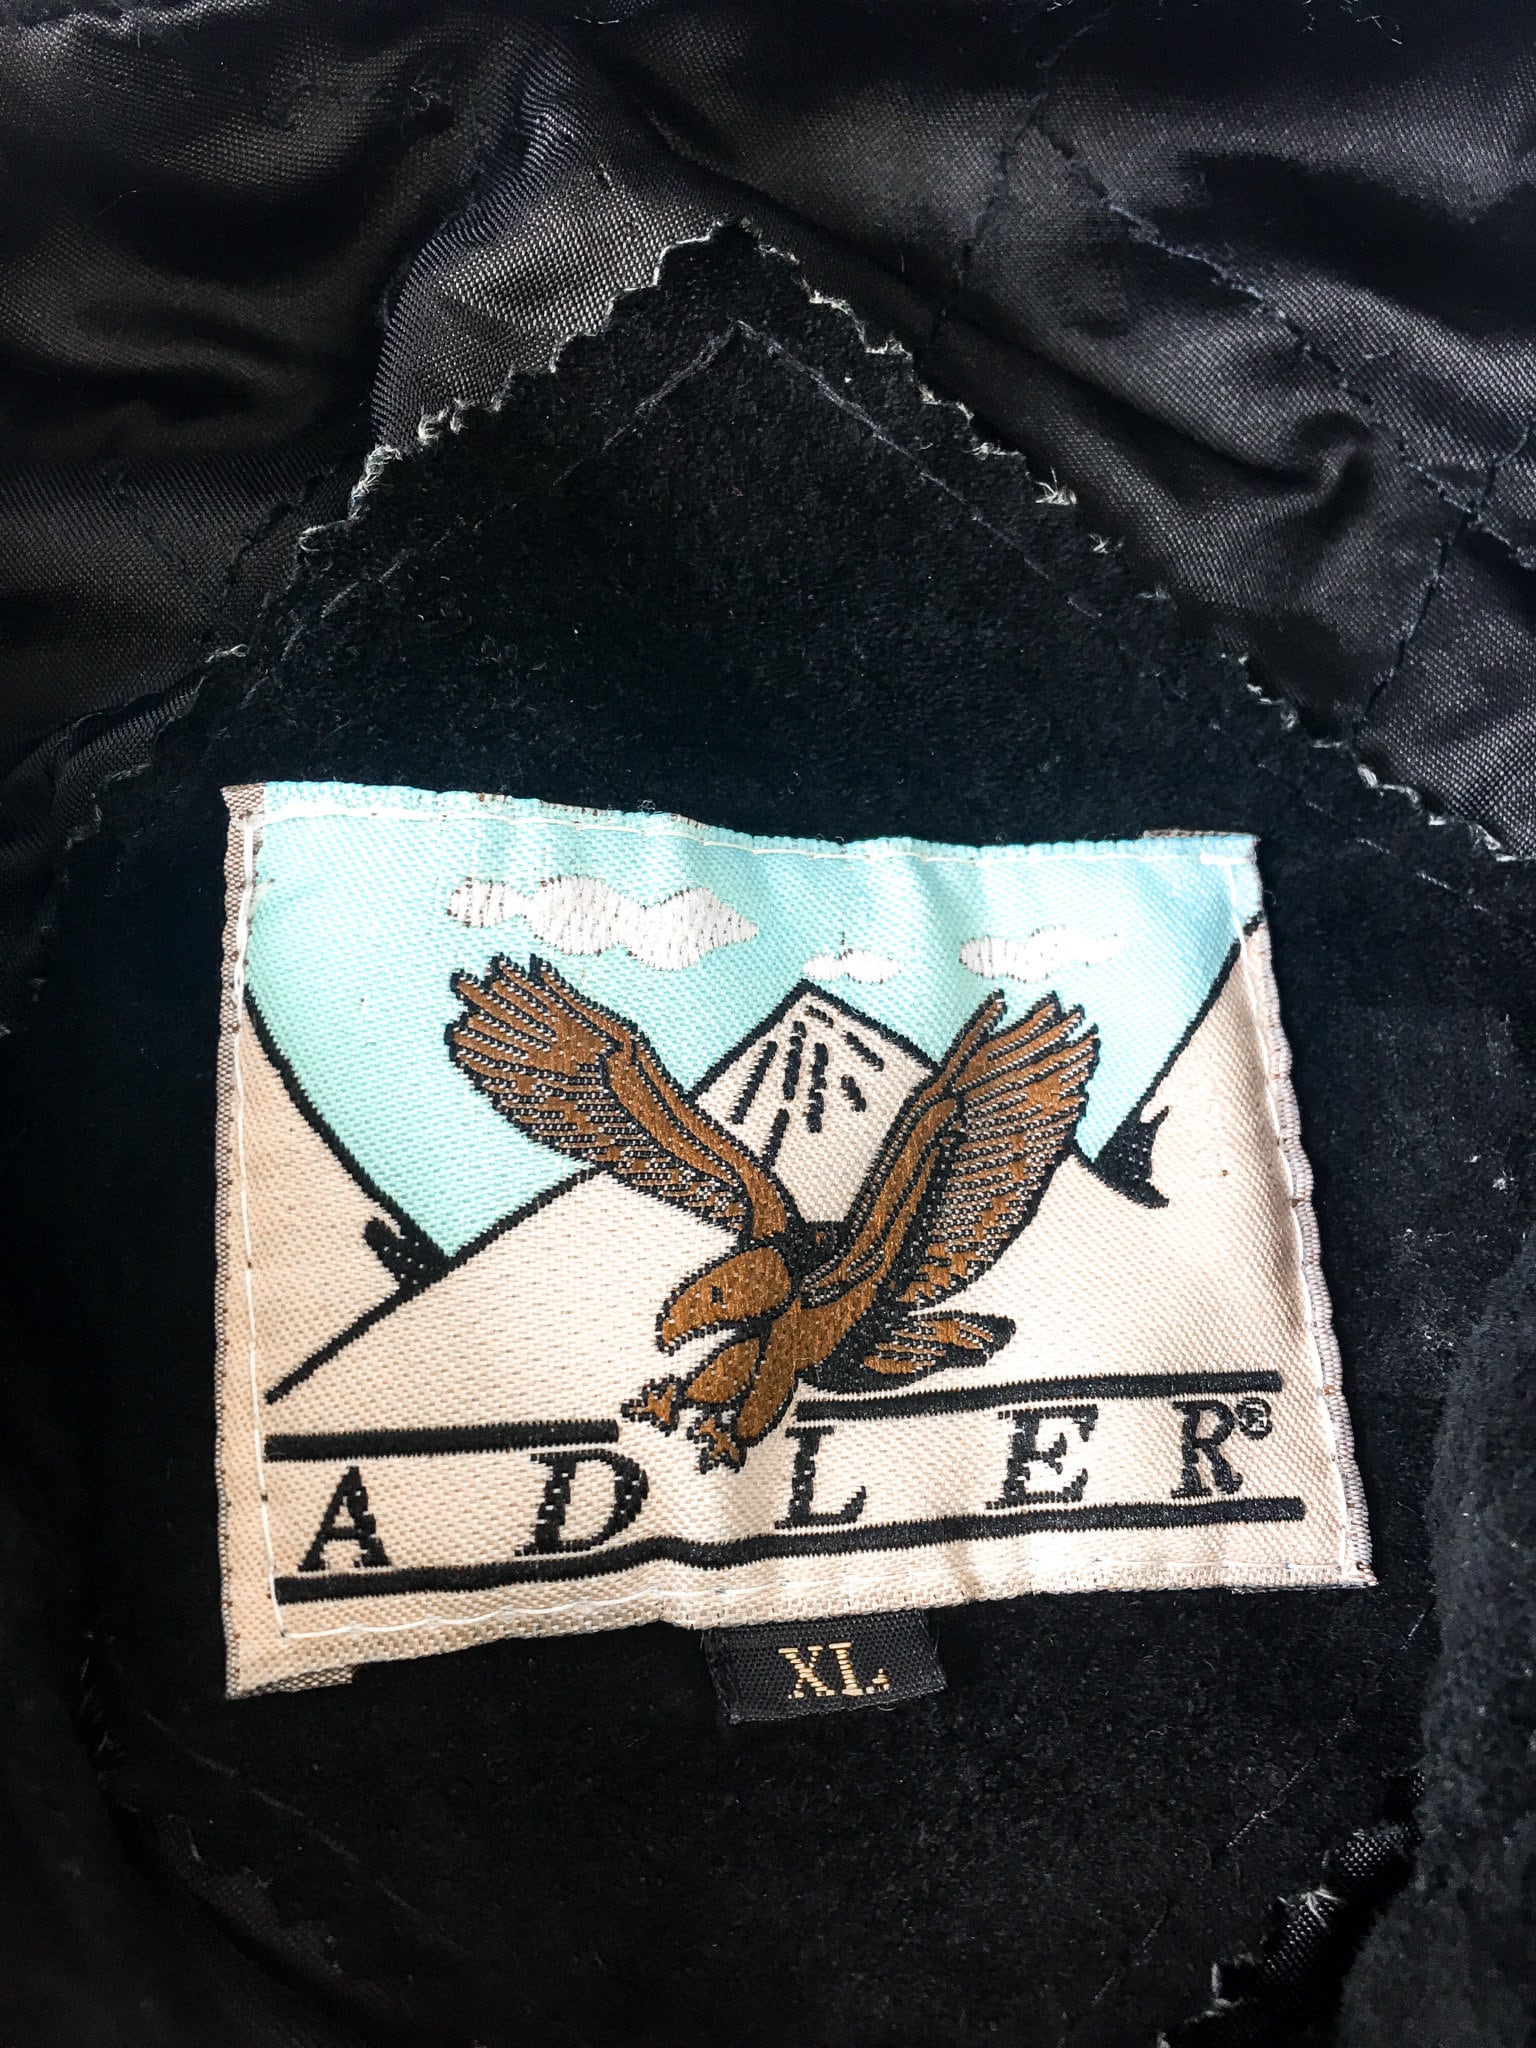 Vintage Alder Black Leather Suede Jacket with Fringe and Blue Bead & Embroidery Detail, Sz. XL, Vintage Western Fringe Jacket